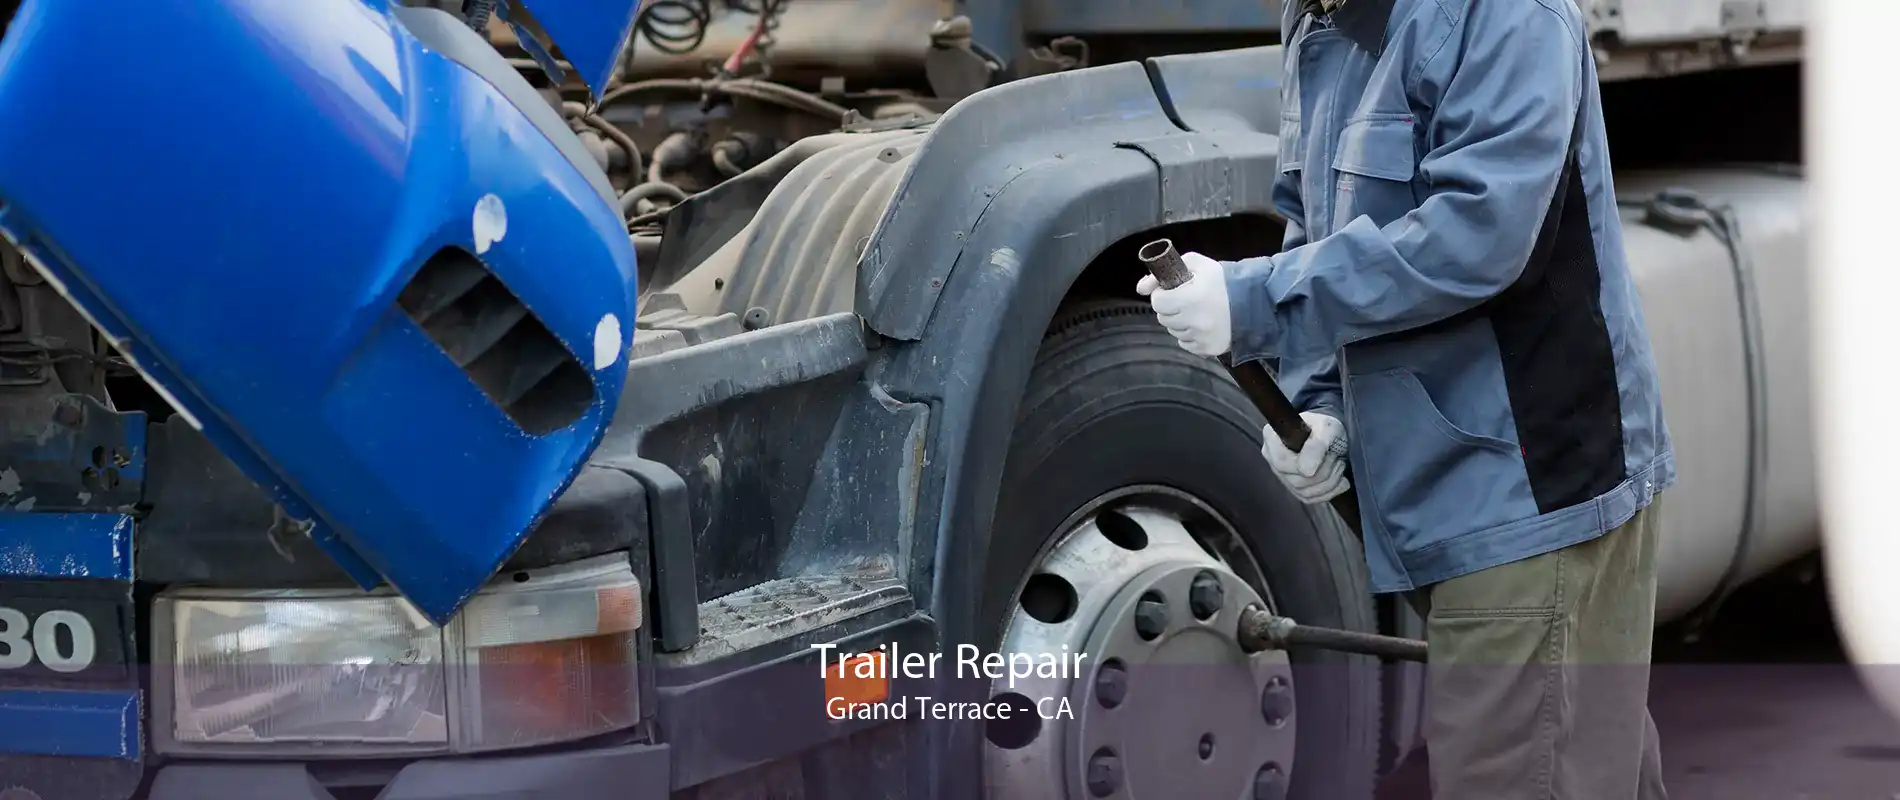 Trailer Repair Grand Terrace - CA